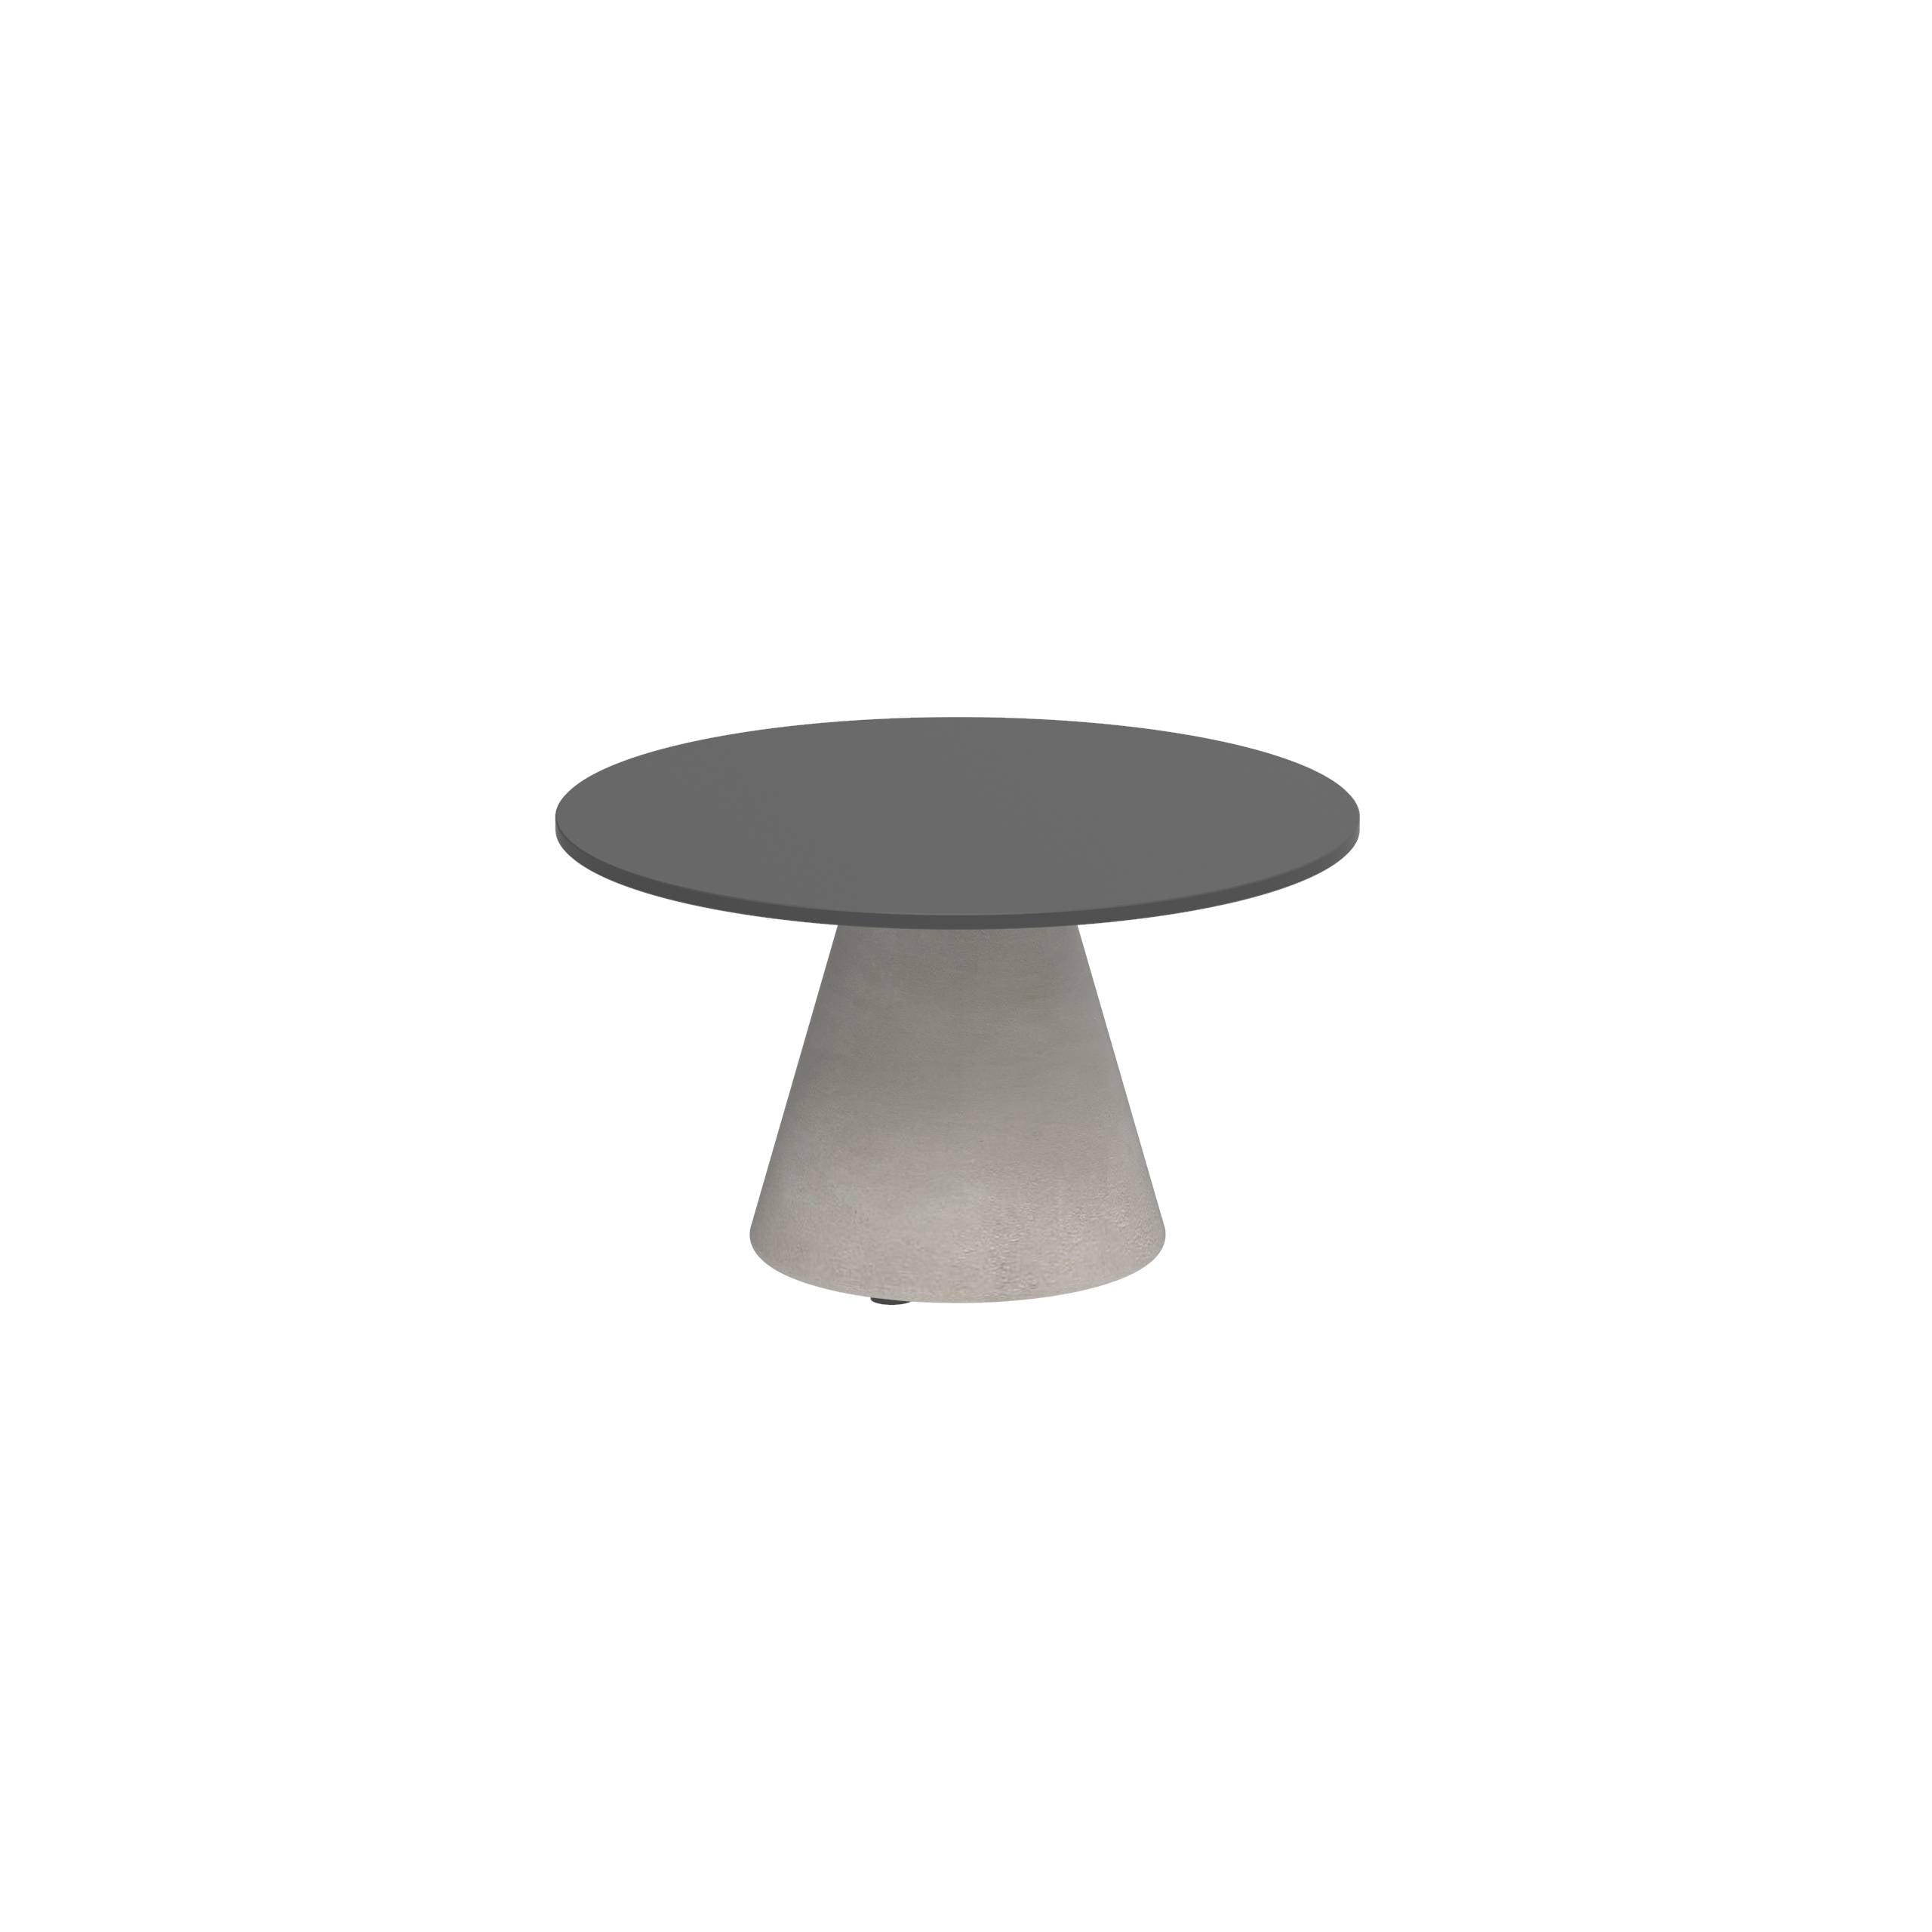 Conix Side Table Ø60cm Leg Concrete Cement Grey - Table Top Ceramic Black